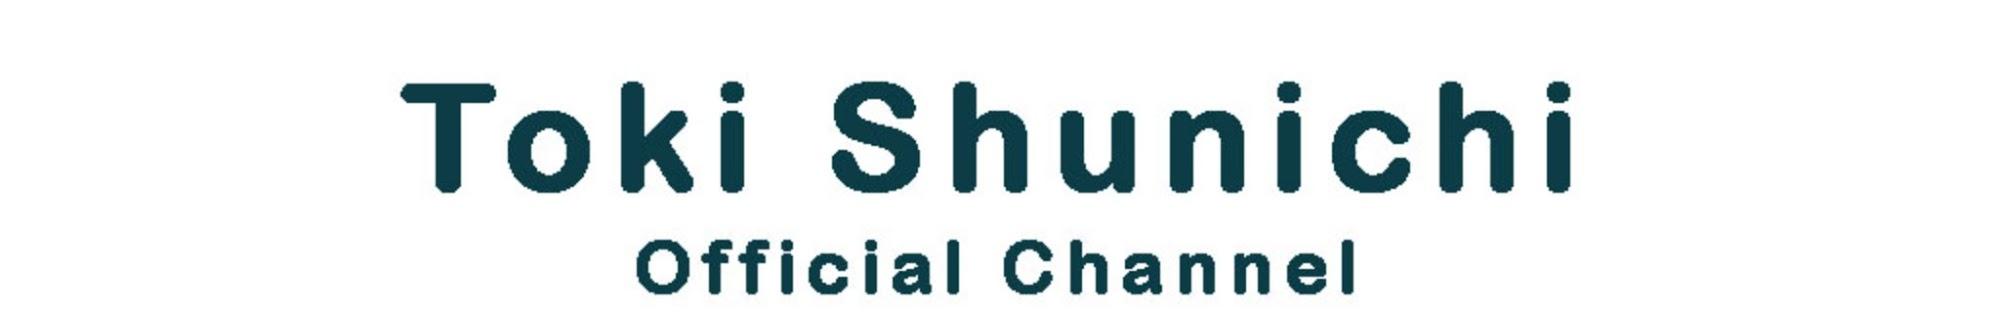 土岐隼一(Shunichi Toki) Official Channel 